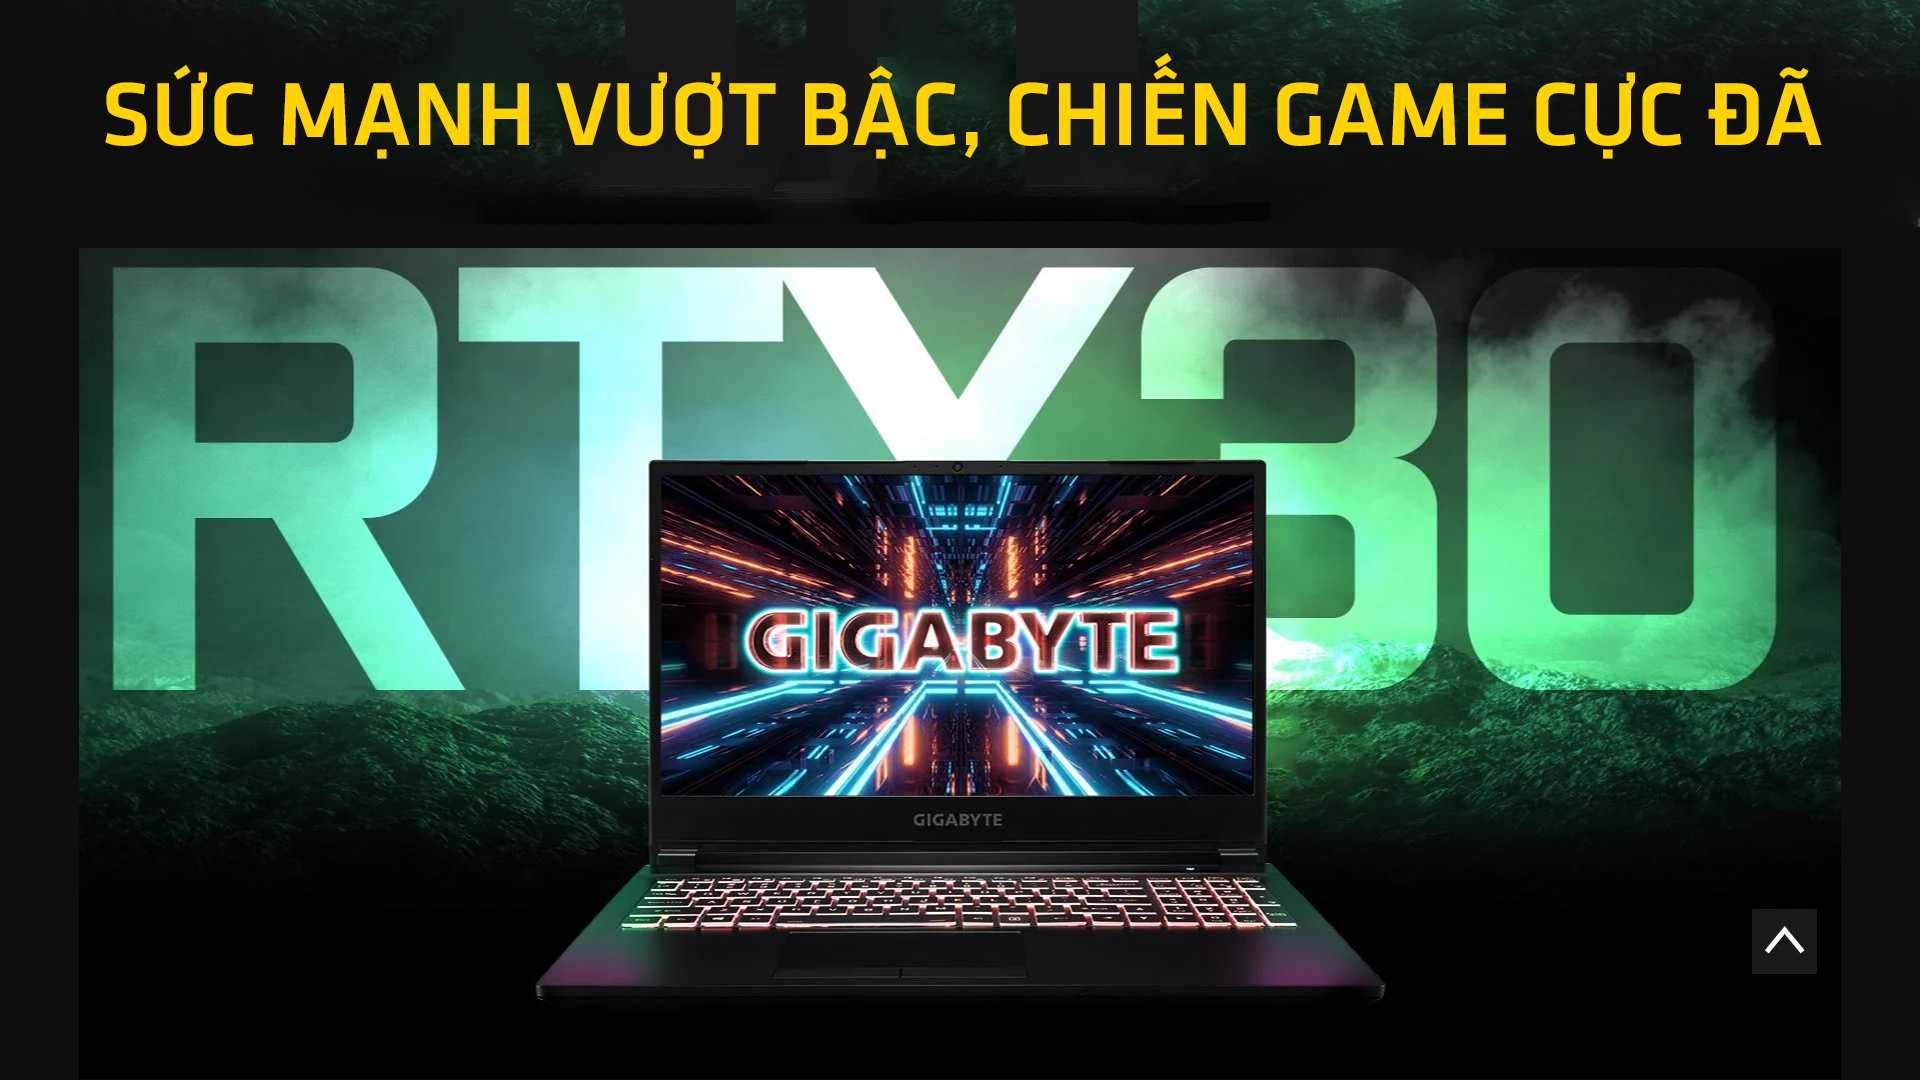 Laptop Gigabyte Gaming G5 là một sản phẩm đa dụng kết hợp giữa laptop gaming giải trí và làm việc với những chức năng đầy đủ của một laptop đồ họa - kỹ thuật